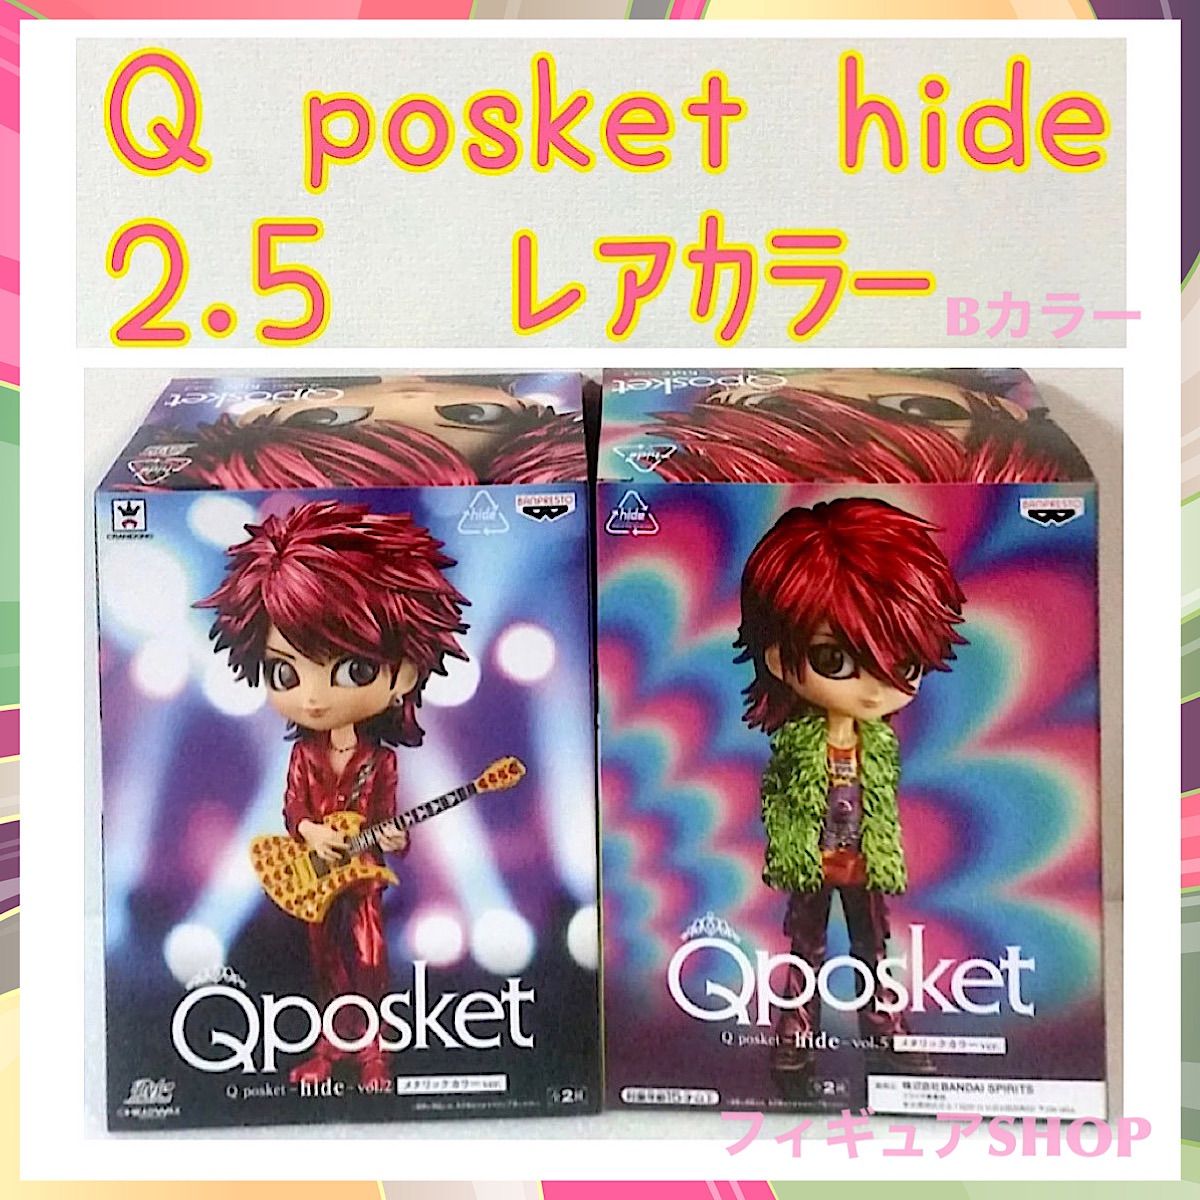 Qposket hide vol.2 ヒデ フィギュア セット | hartwellspremium.com